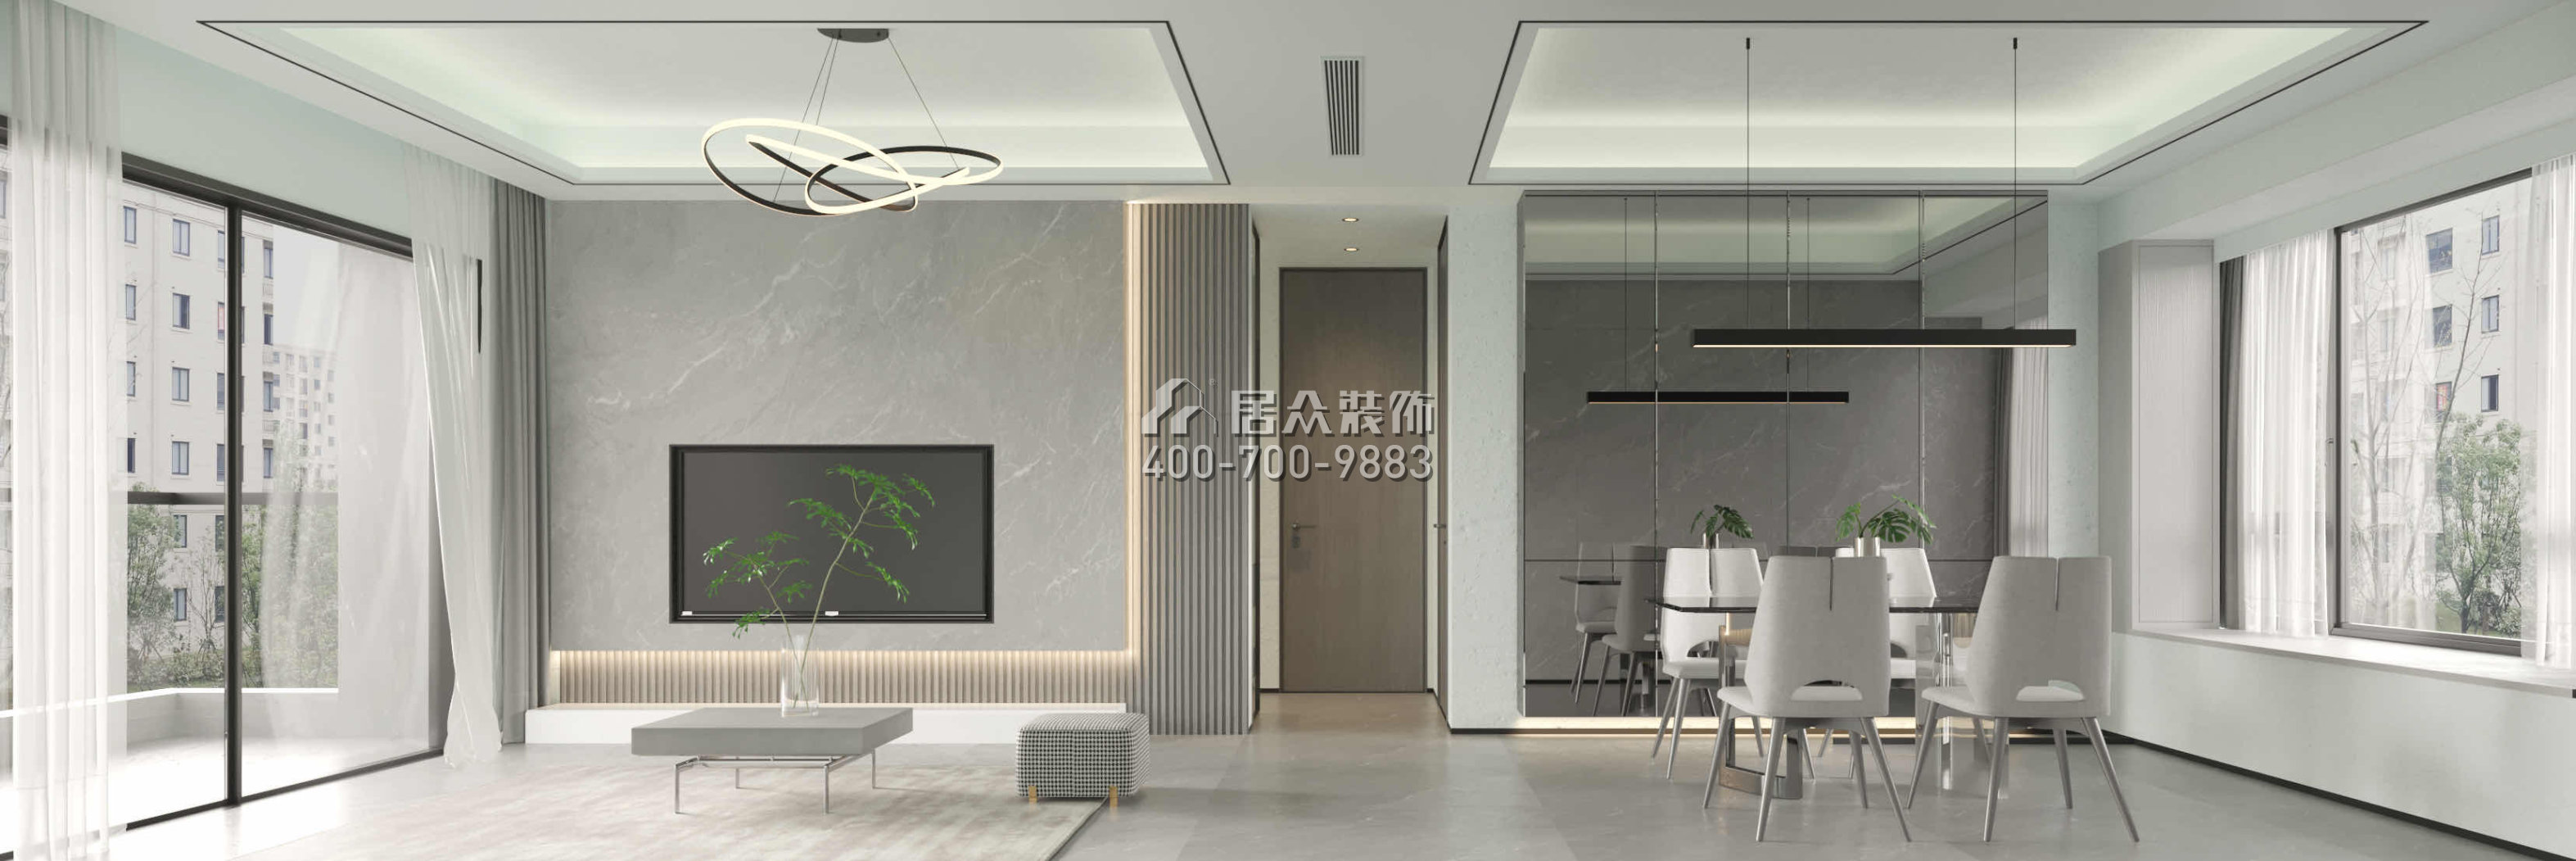 京基·御景峯110平方米现代简约风格平层户型客厅装修效果图